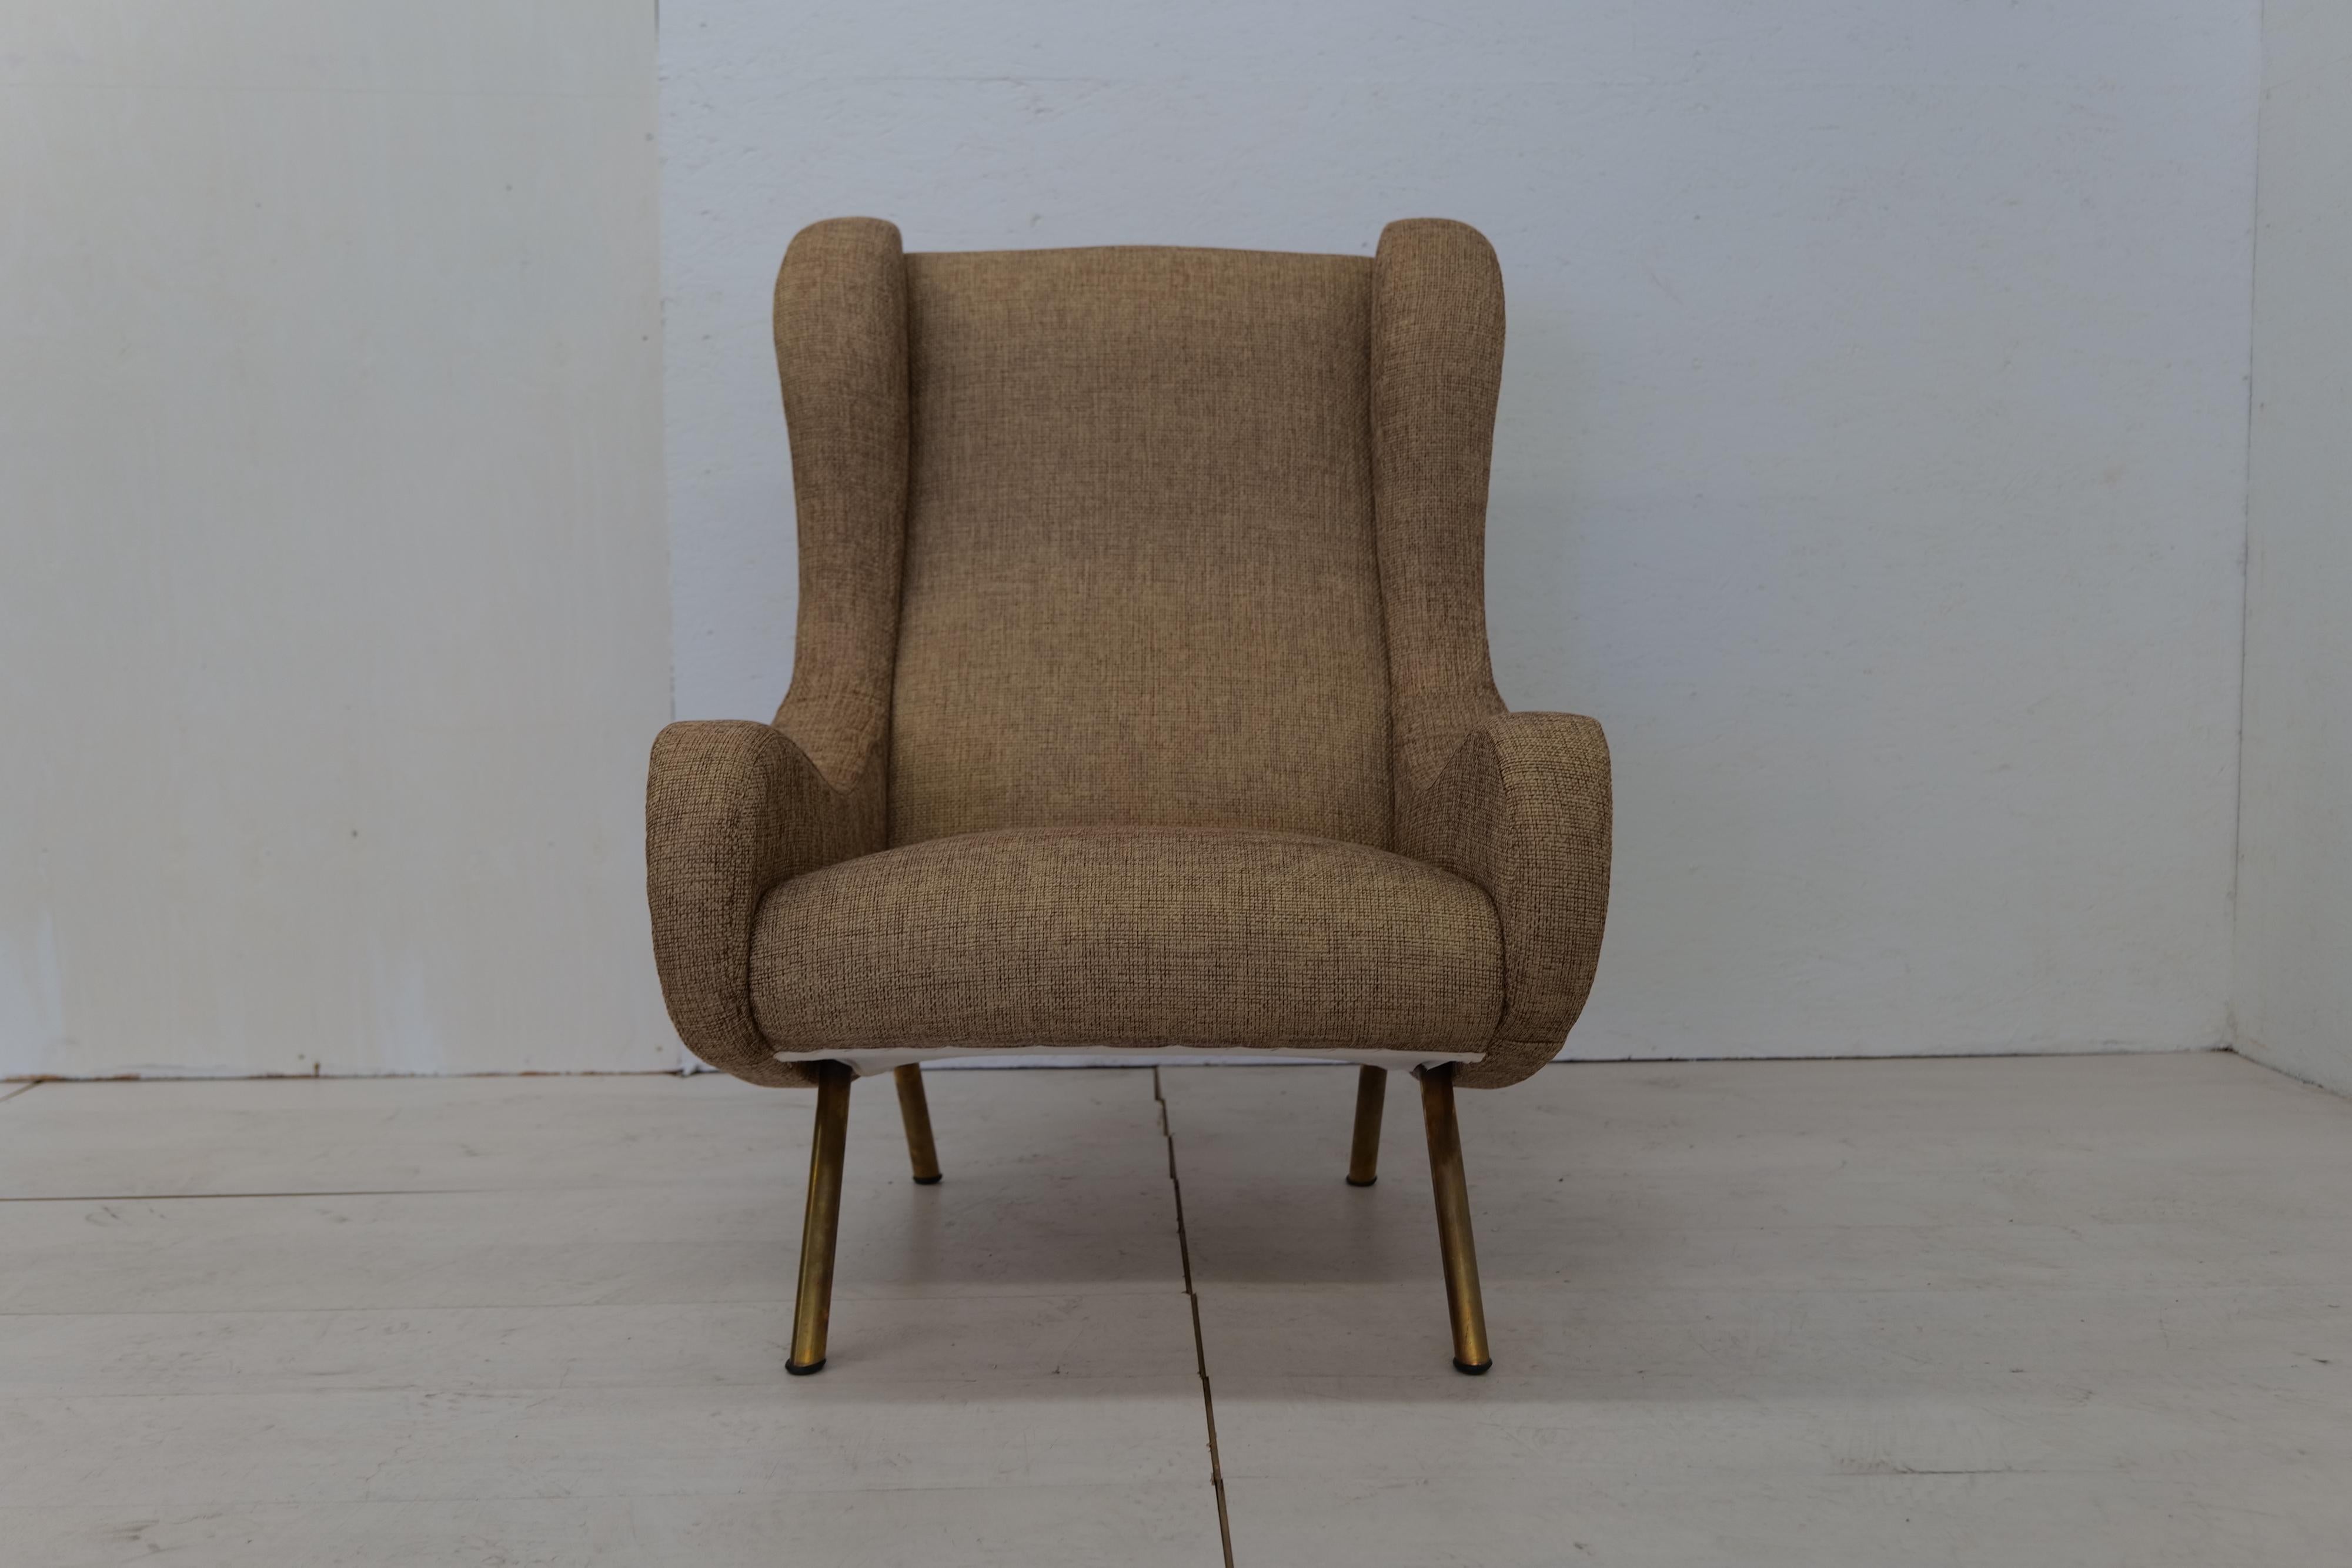 Marco Zanuso Senior Sessel für Arflex, 1950er-Jahre (Moderne der Mitte des Jahrhunderts)